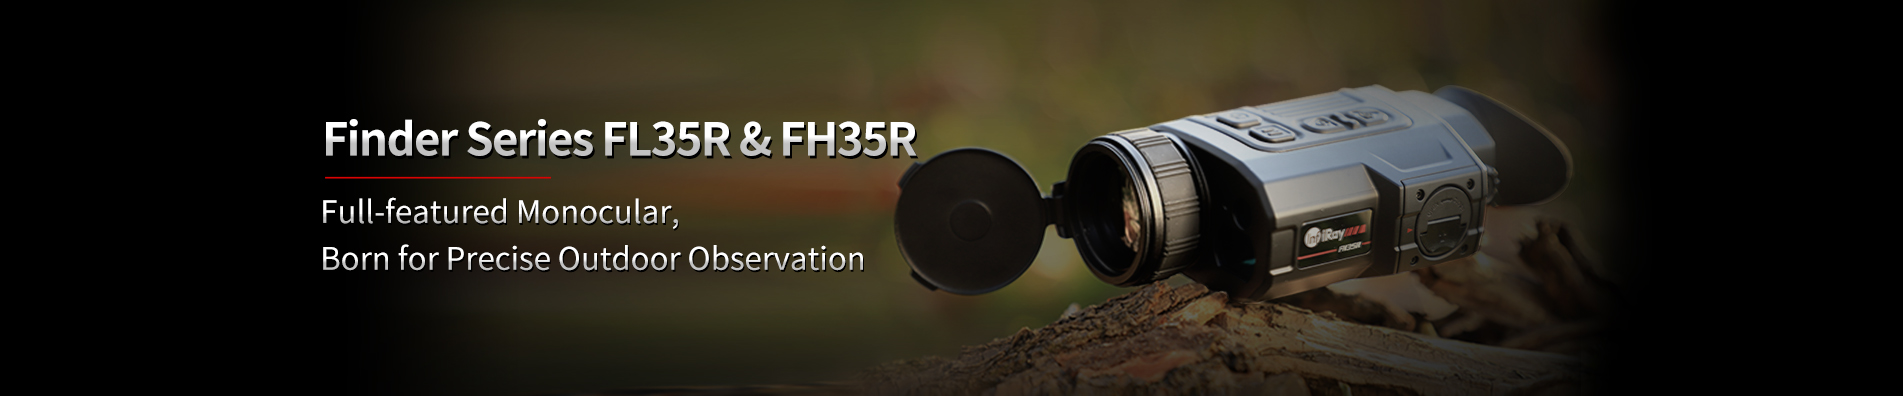 Wärmebild-Monokular FH35R&FL35R